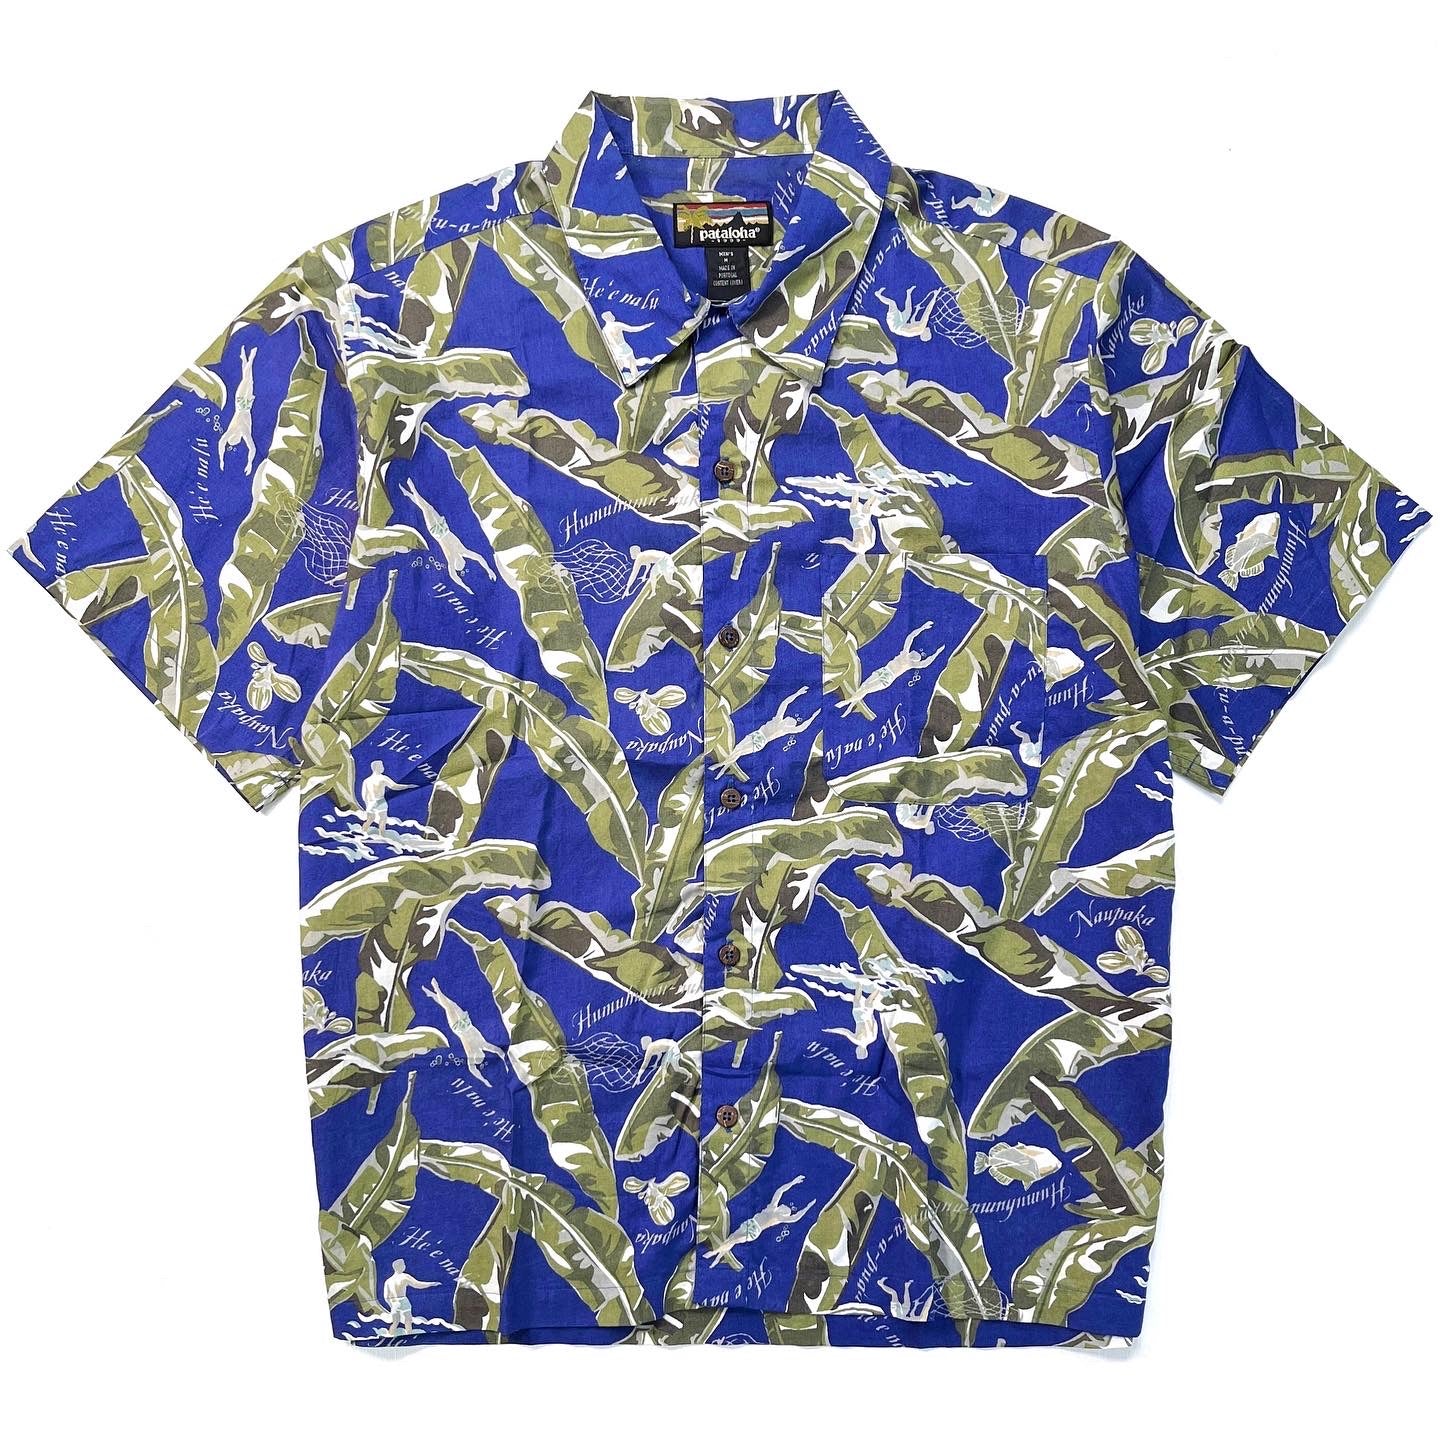 1999 Patagonia Mens Pataloha Print Shirt, Bananarama: Cobalt (M/L)